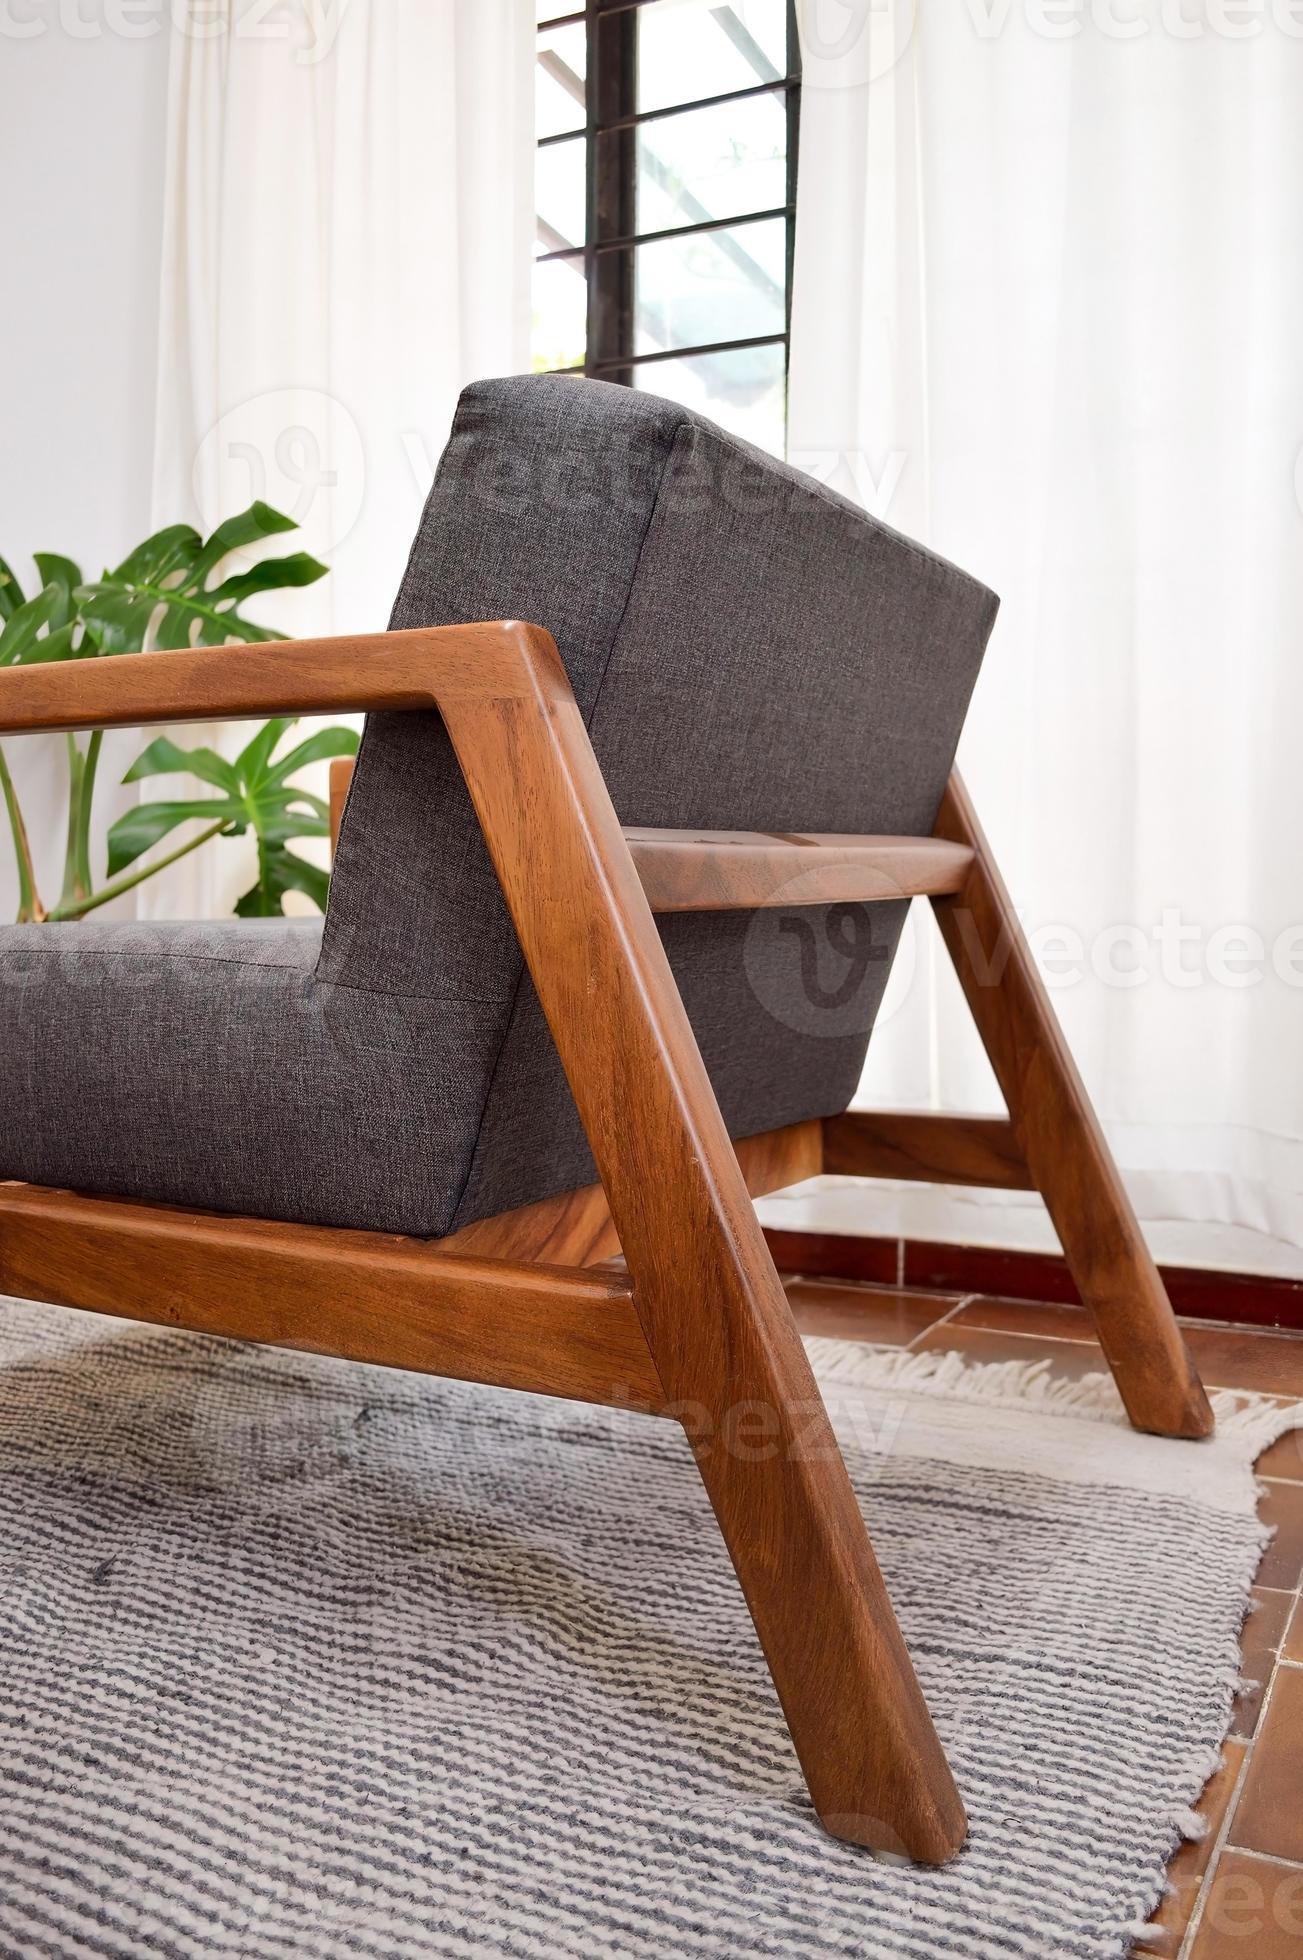 fauteuil, stoel, individu bank, solide natuurlijk hout structuur, stoel en  terug in kleding stof 12384926 Stockfoto